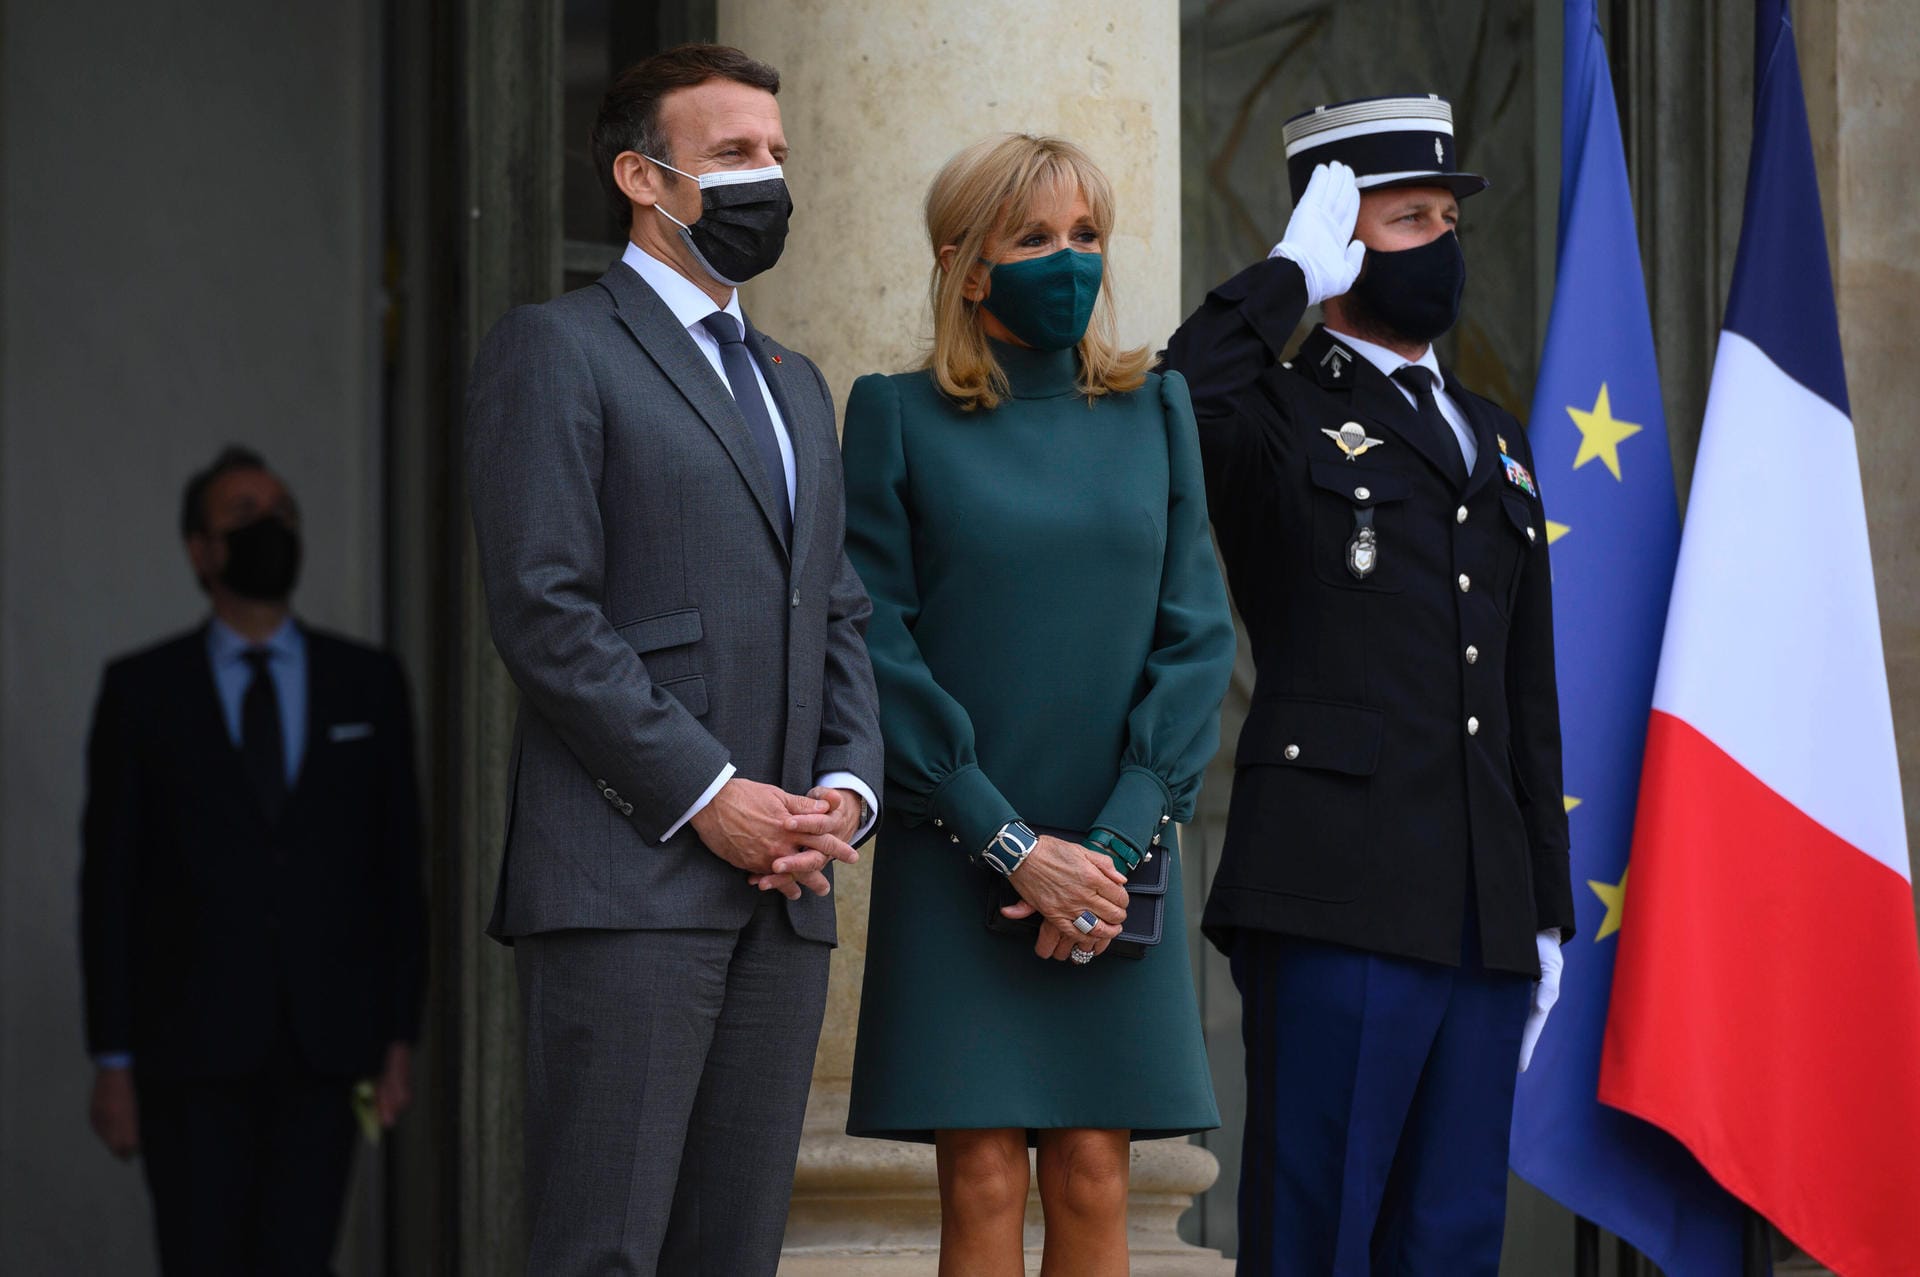 Mai 2021: Das Ehepaar empfängt Besuch vor dem Élysée-Palast in Paris.